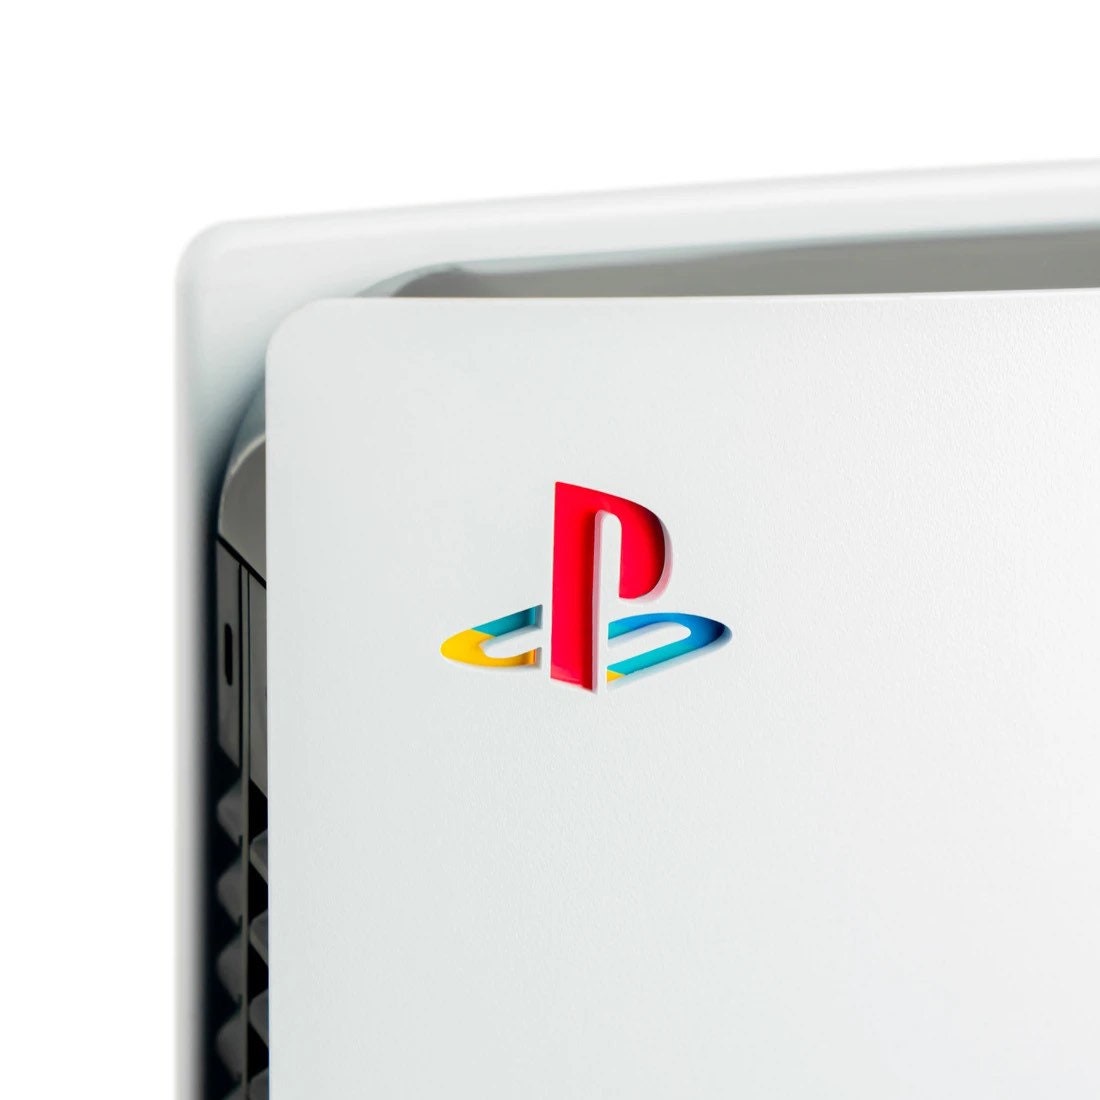 PlayStation 3, más cara de lo esperado